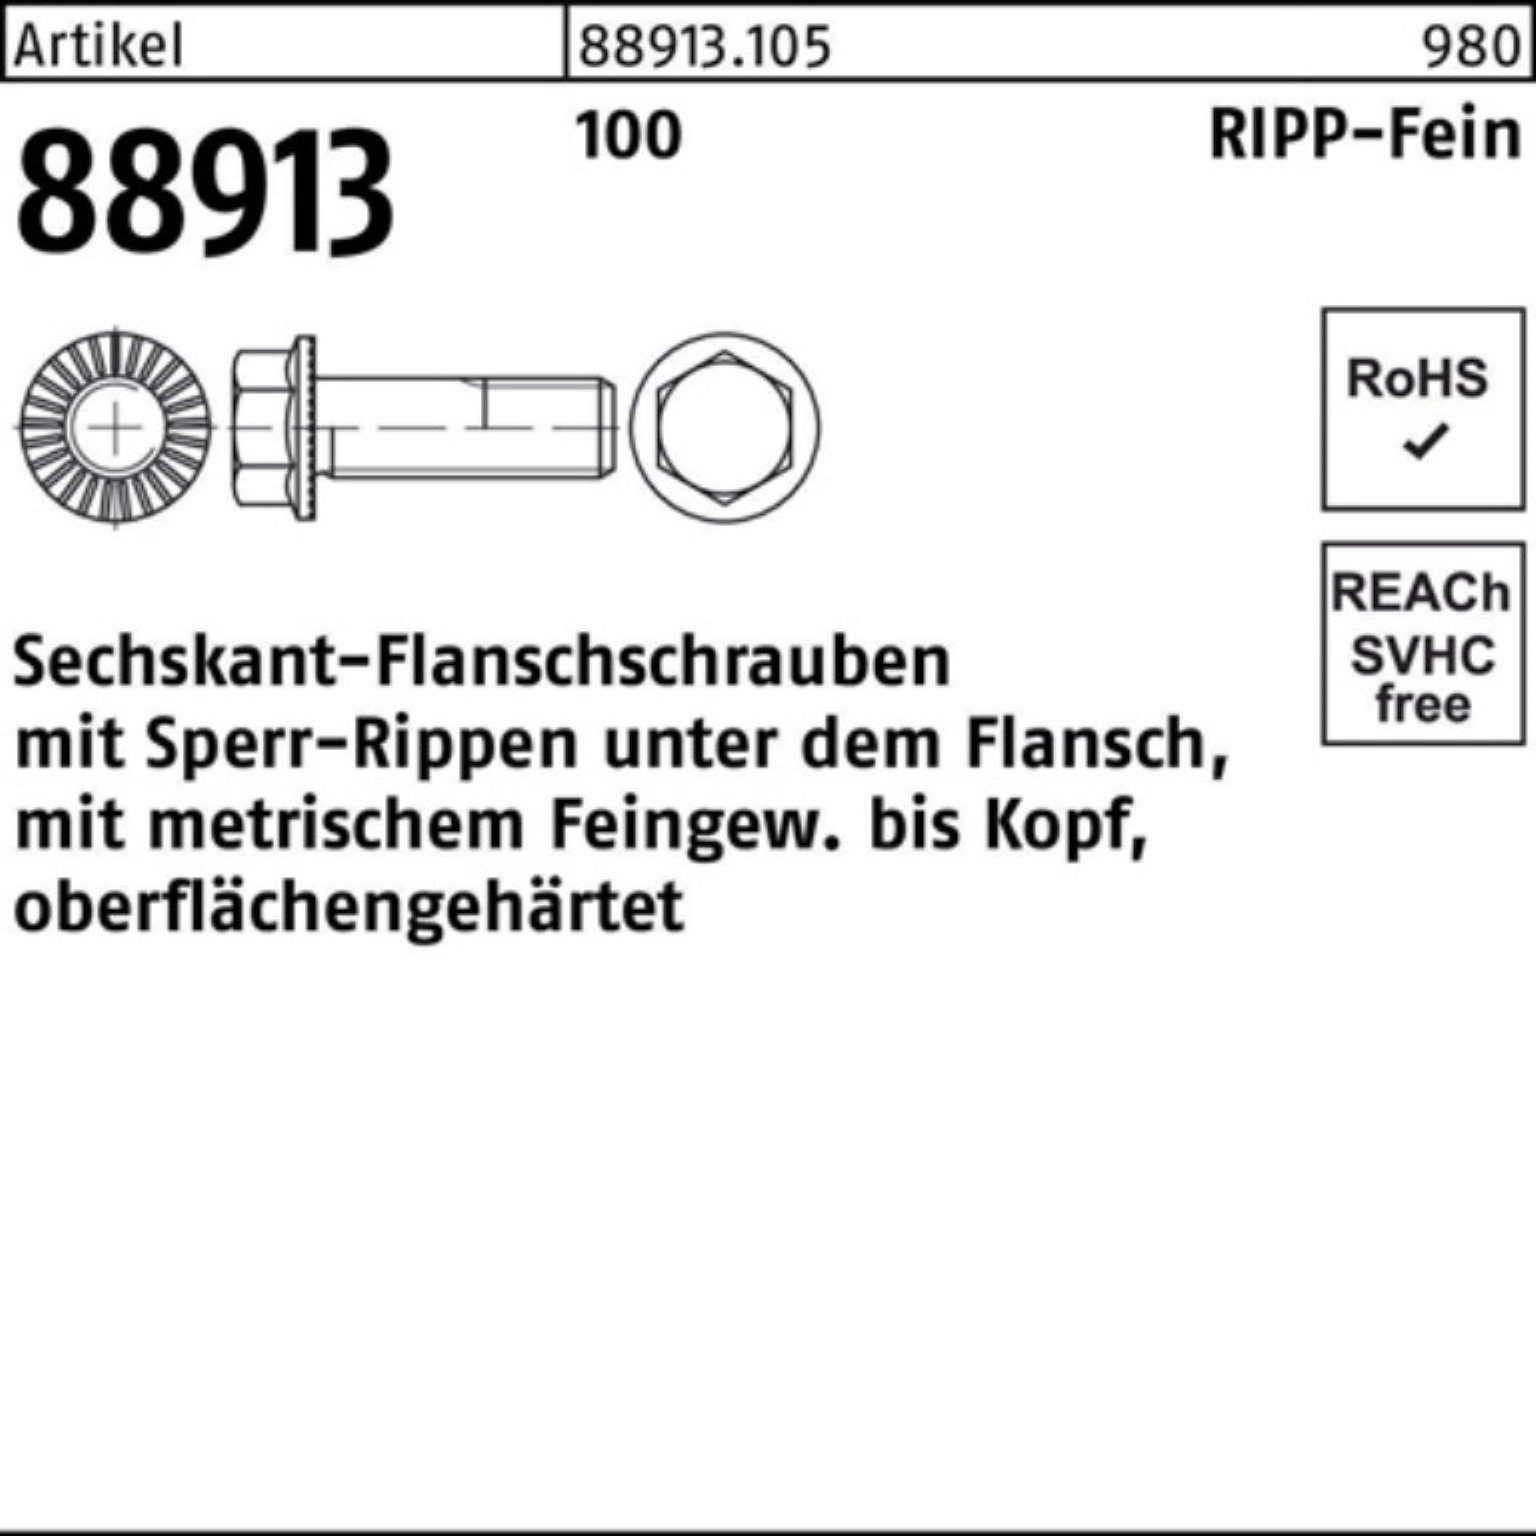 Pack 88913 1,5x 50 VG Sechskantflanschschraube Reyher Sperr-Ripp M14x 100er Schraube R